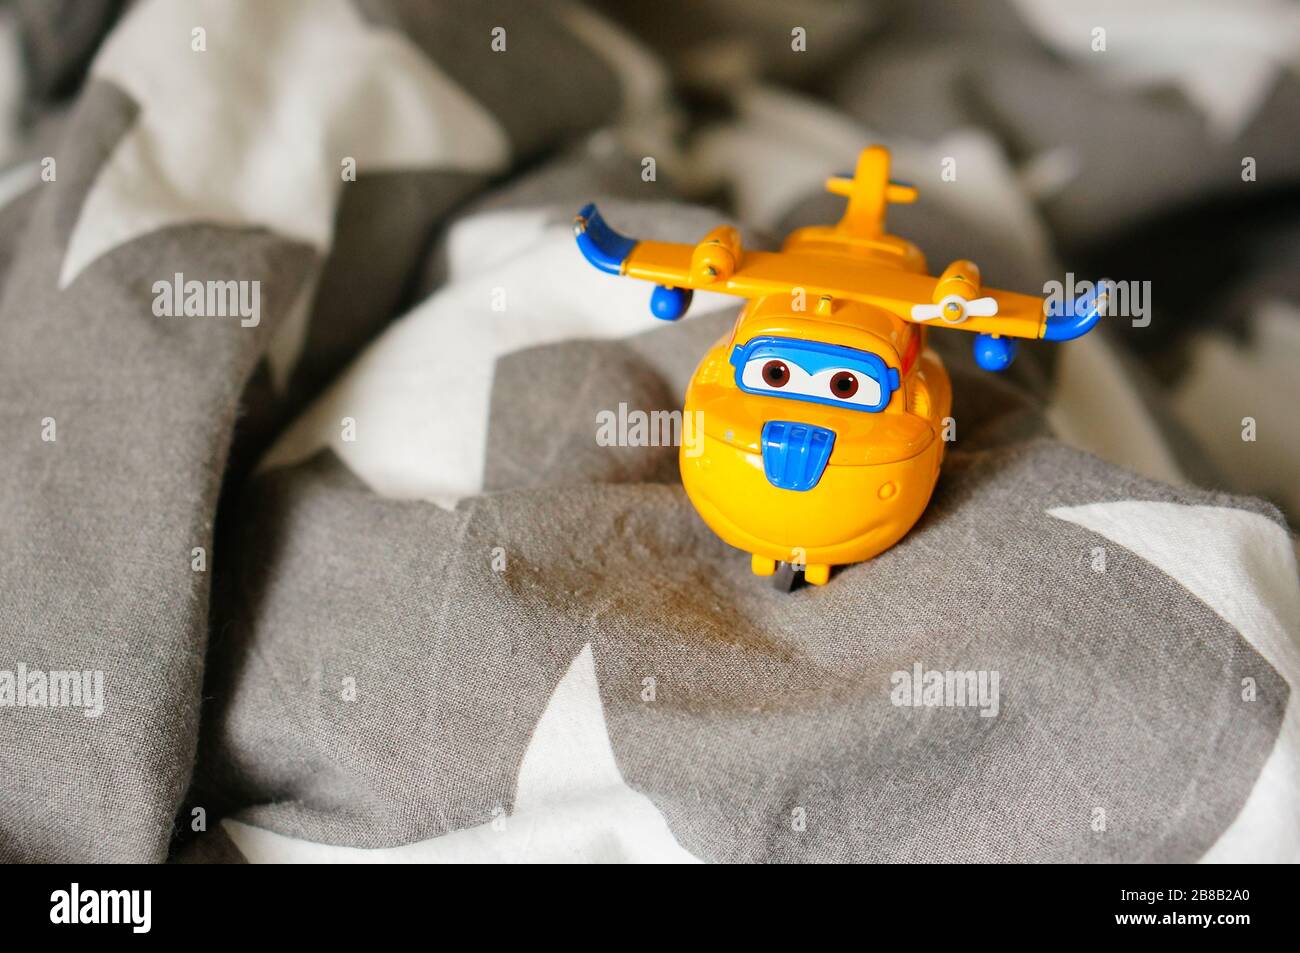 POZNAN, POLOGNE - 13 mars 2020: Modèle de jouet jaune Donnie Super Wings  place sur une feuille en doux foyer Photo Stock - Alamy